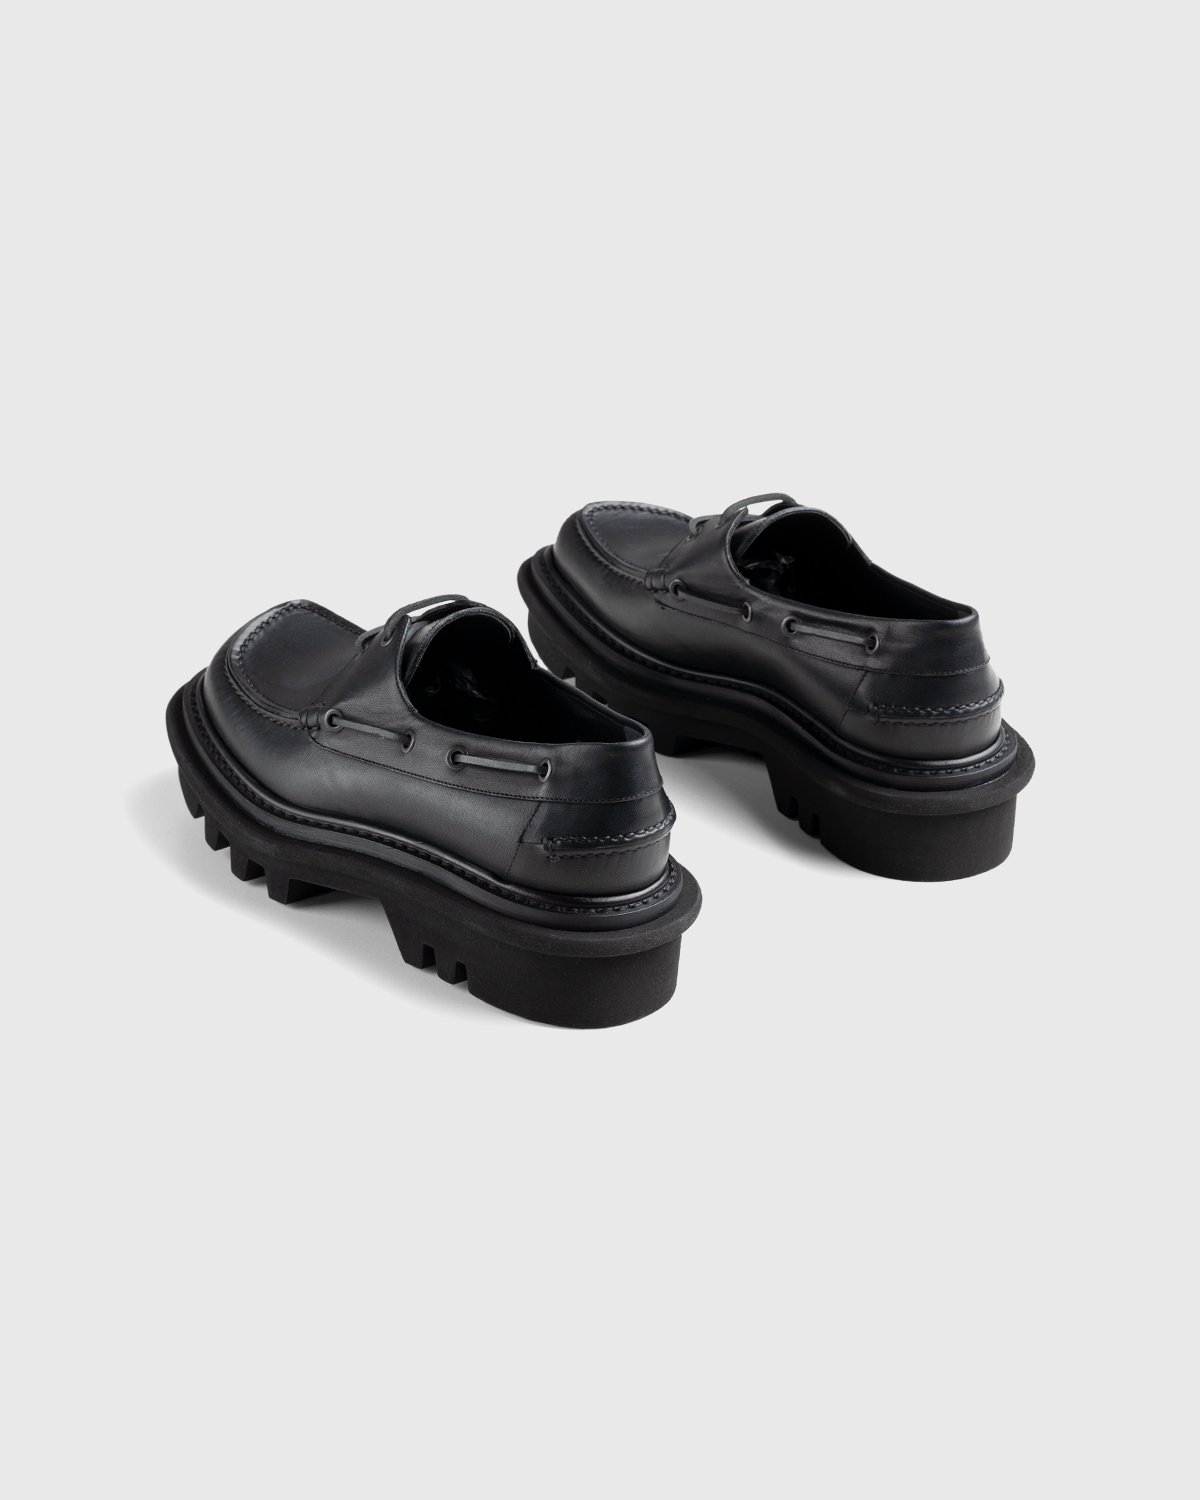 Dries van Noten - Leather Boat Shoe Black - Footwear - Black - Image 4